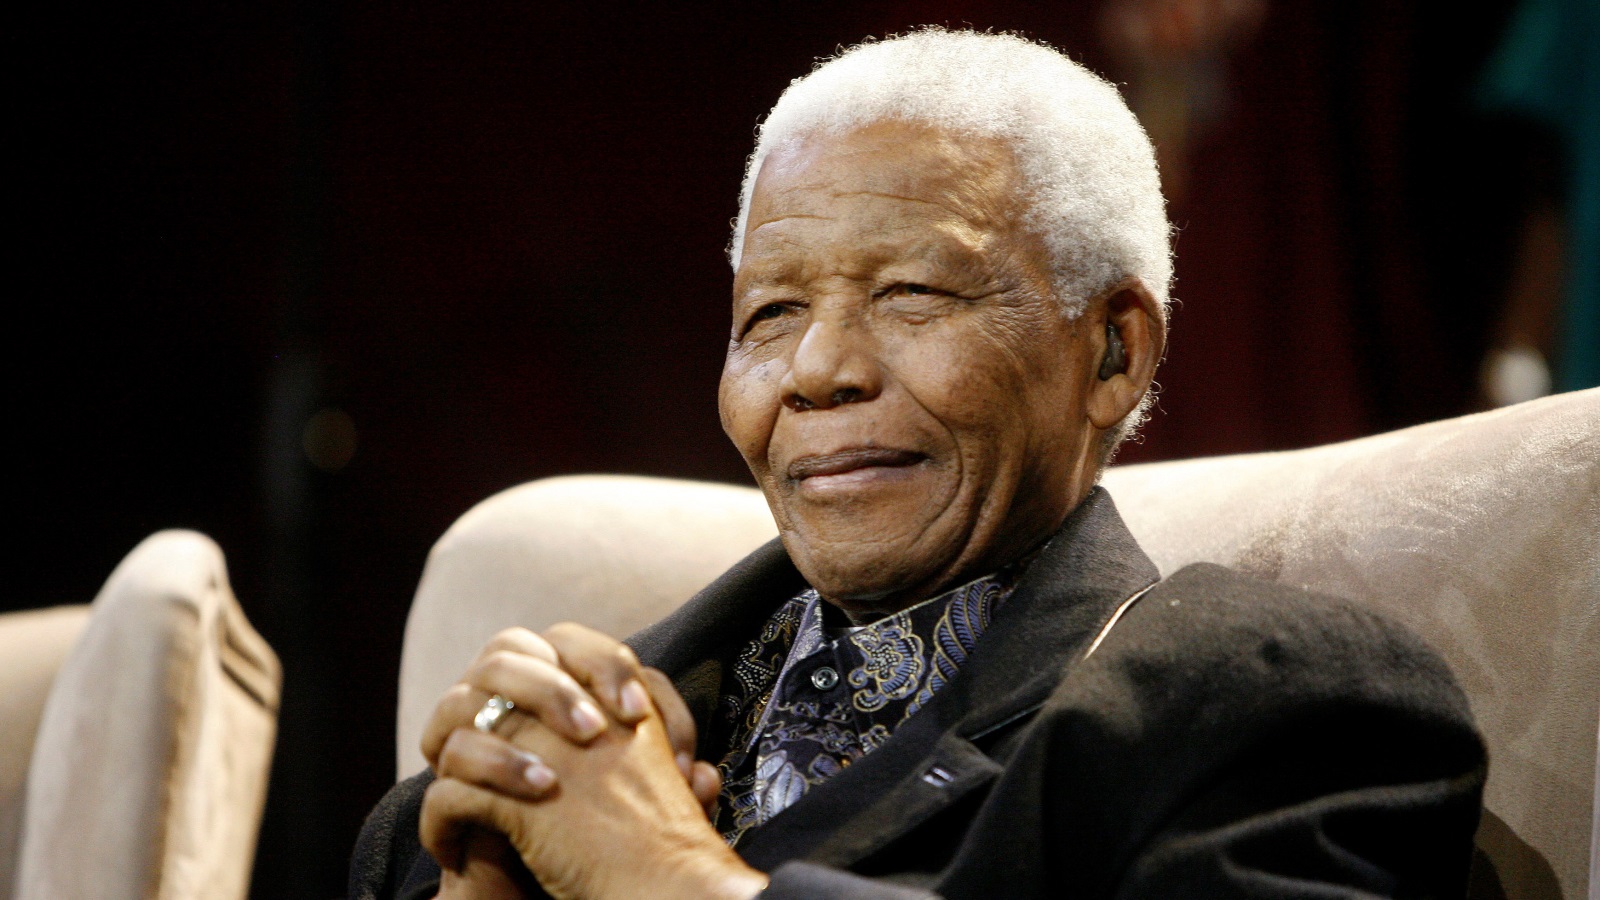 نيلسون مانديلا، سياسي مناهض لنظام الفصل العنصري في جنوب إفريقيا، شغل منصب رئيس جنوب إفريقيا 1994-1999 (رويترز)